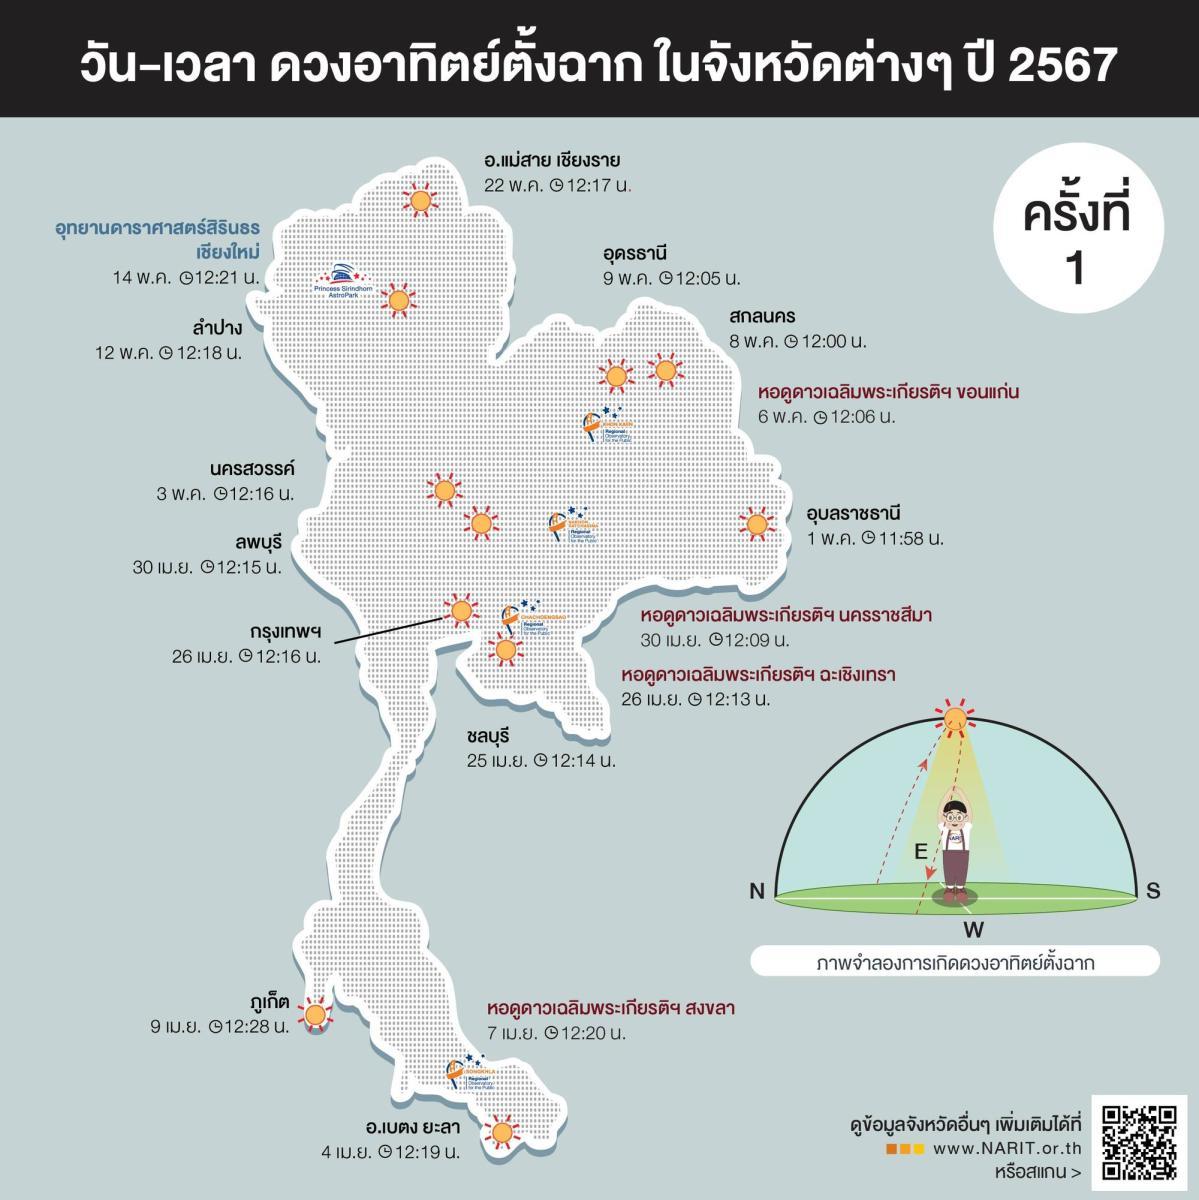 ทั่วไทยตรียมไร้เงา เช็กวัน-เวลา “ดวงอาทิตย์ตั้งฉาก” ปี 2567